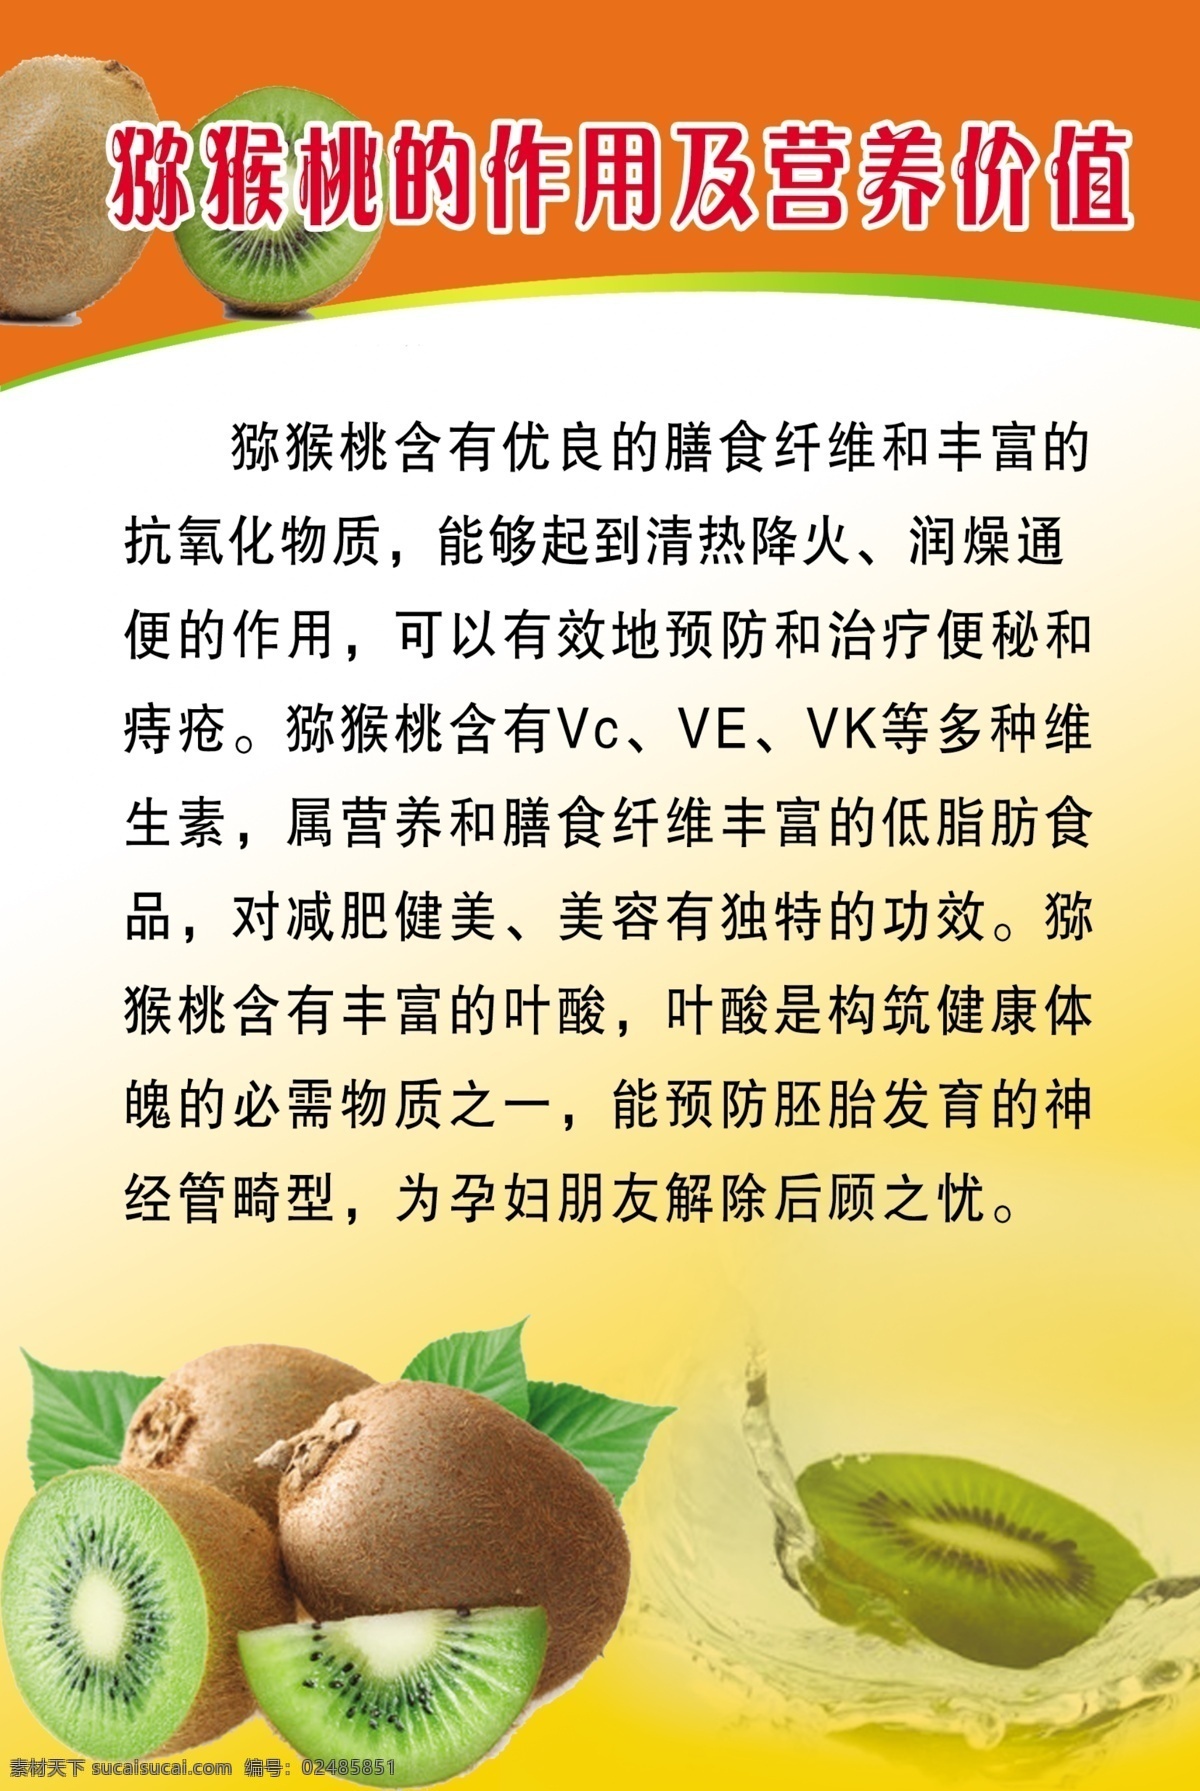 弥 猴 桃 作用 营养 价值 桔黄底 弥猴桃图片 水果 展板模板 广告设计模板 源文件